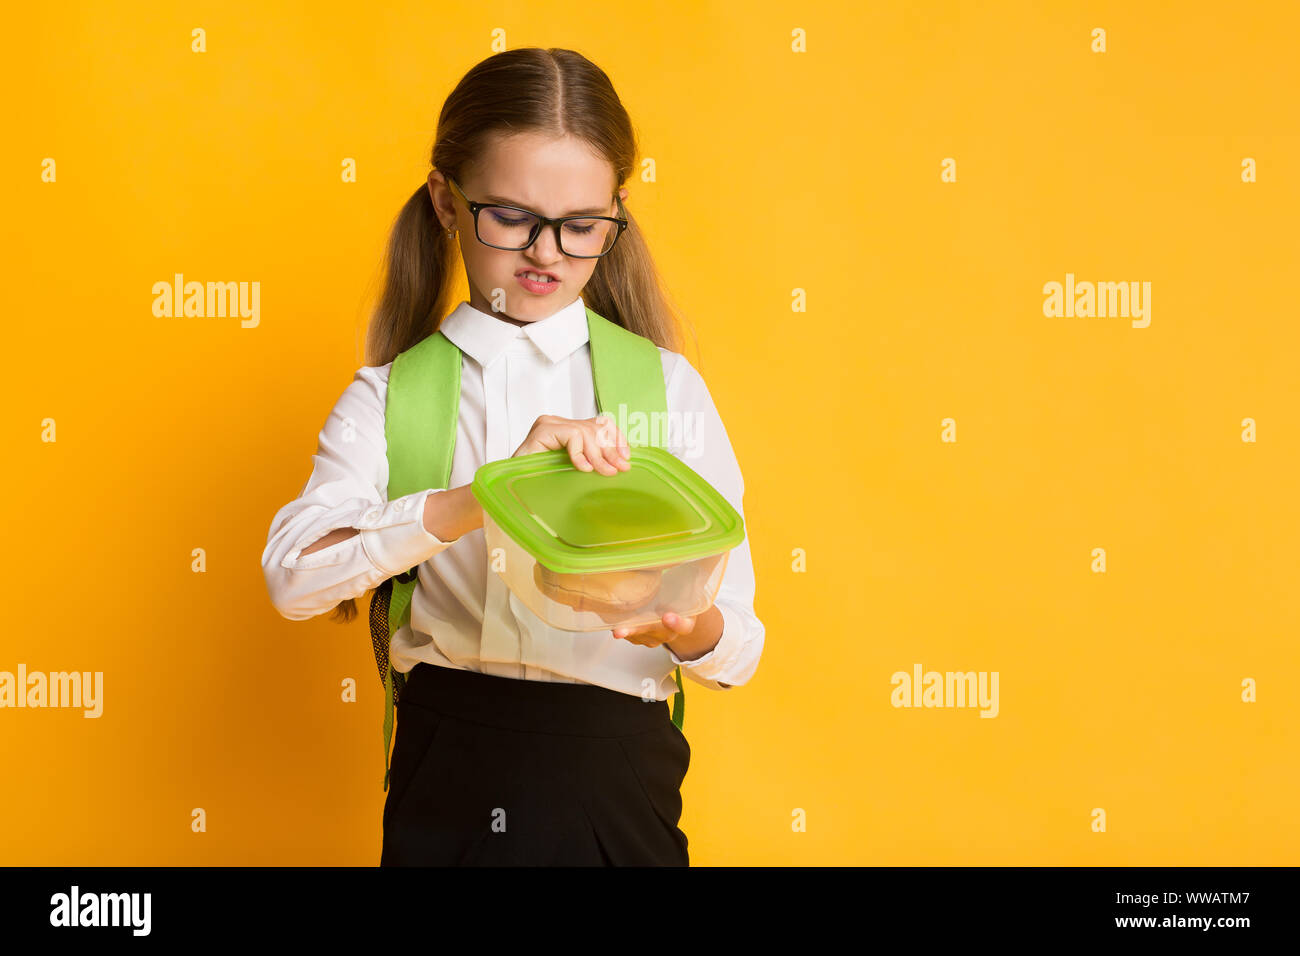 Disgustato Schoolgirl guardando a Sandwich In Lunchbox, sfondo giallo Foto Stock